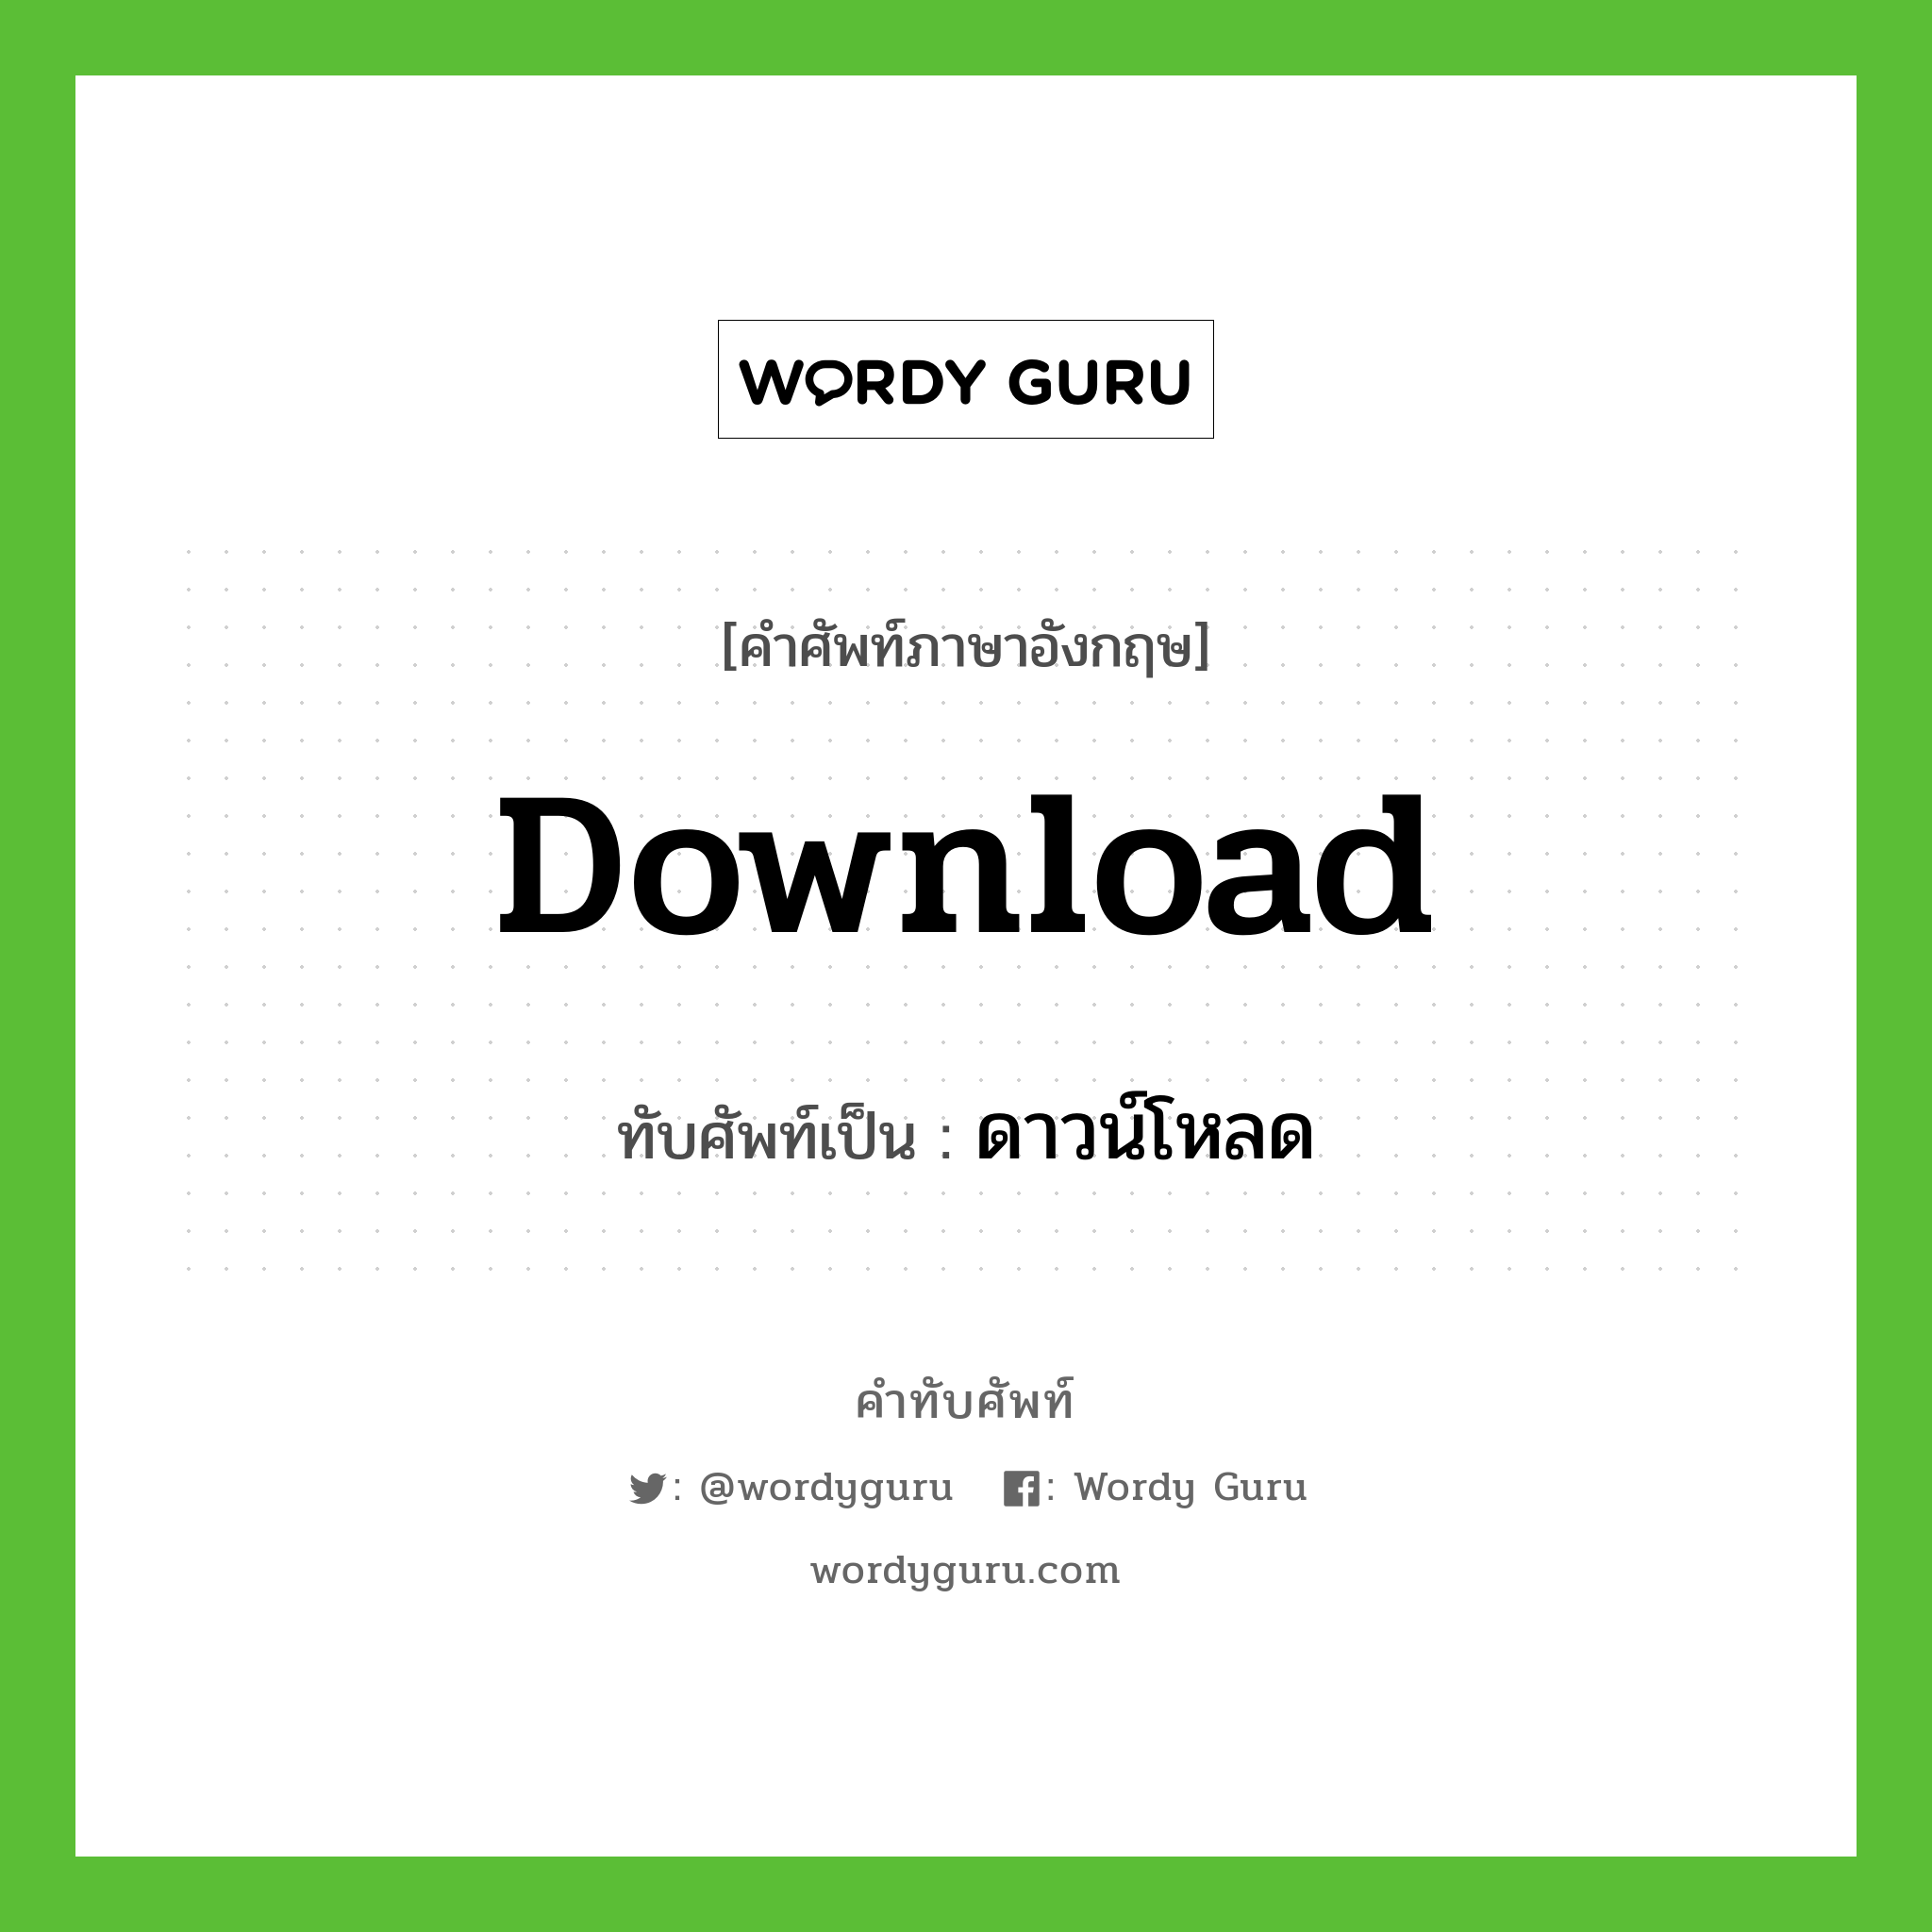 Download เขียนเป็นคำไทยว่าอะไร? | คำทับศัพท์